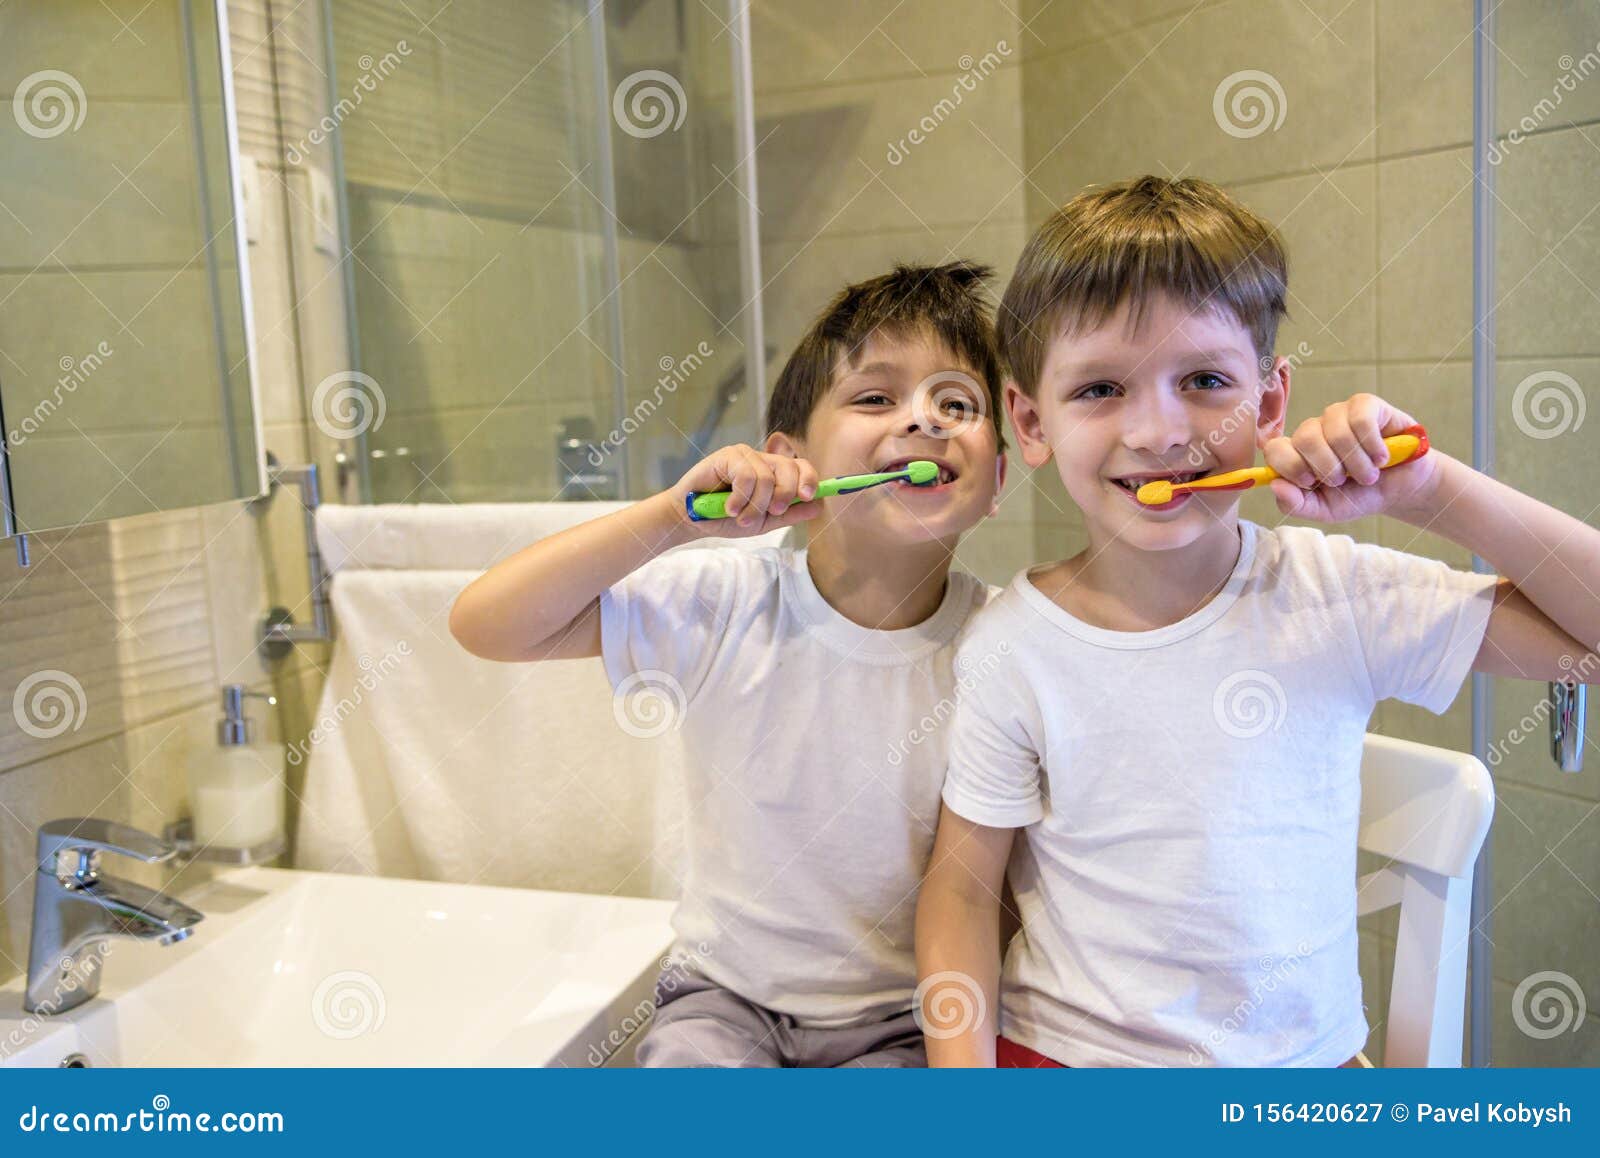 Retrato de mellizos niÃ±os pequeÃ±os hermano pequeÃ±o en el baÃ±o lavar la cara lavar los dientes con cepillo de dientes jugando